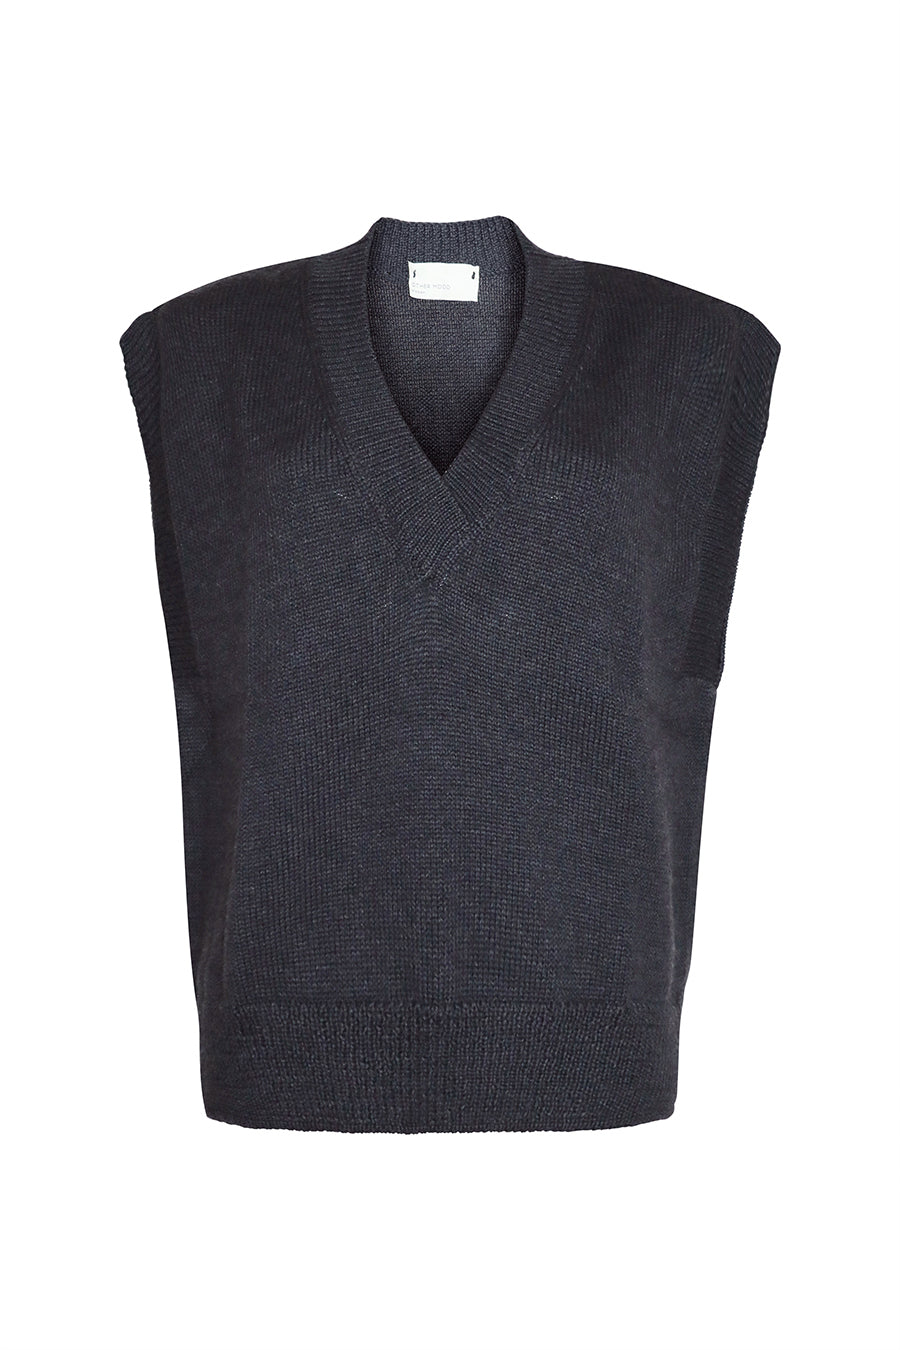 ZGEST OM knitted vest black 2